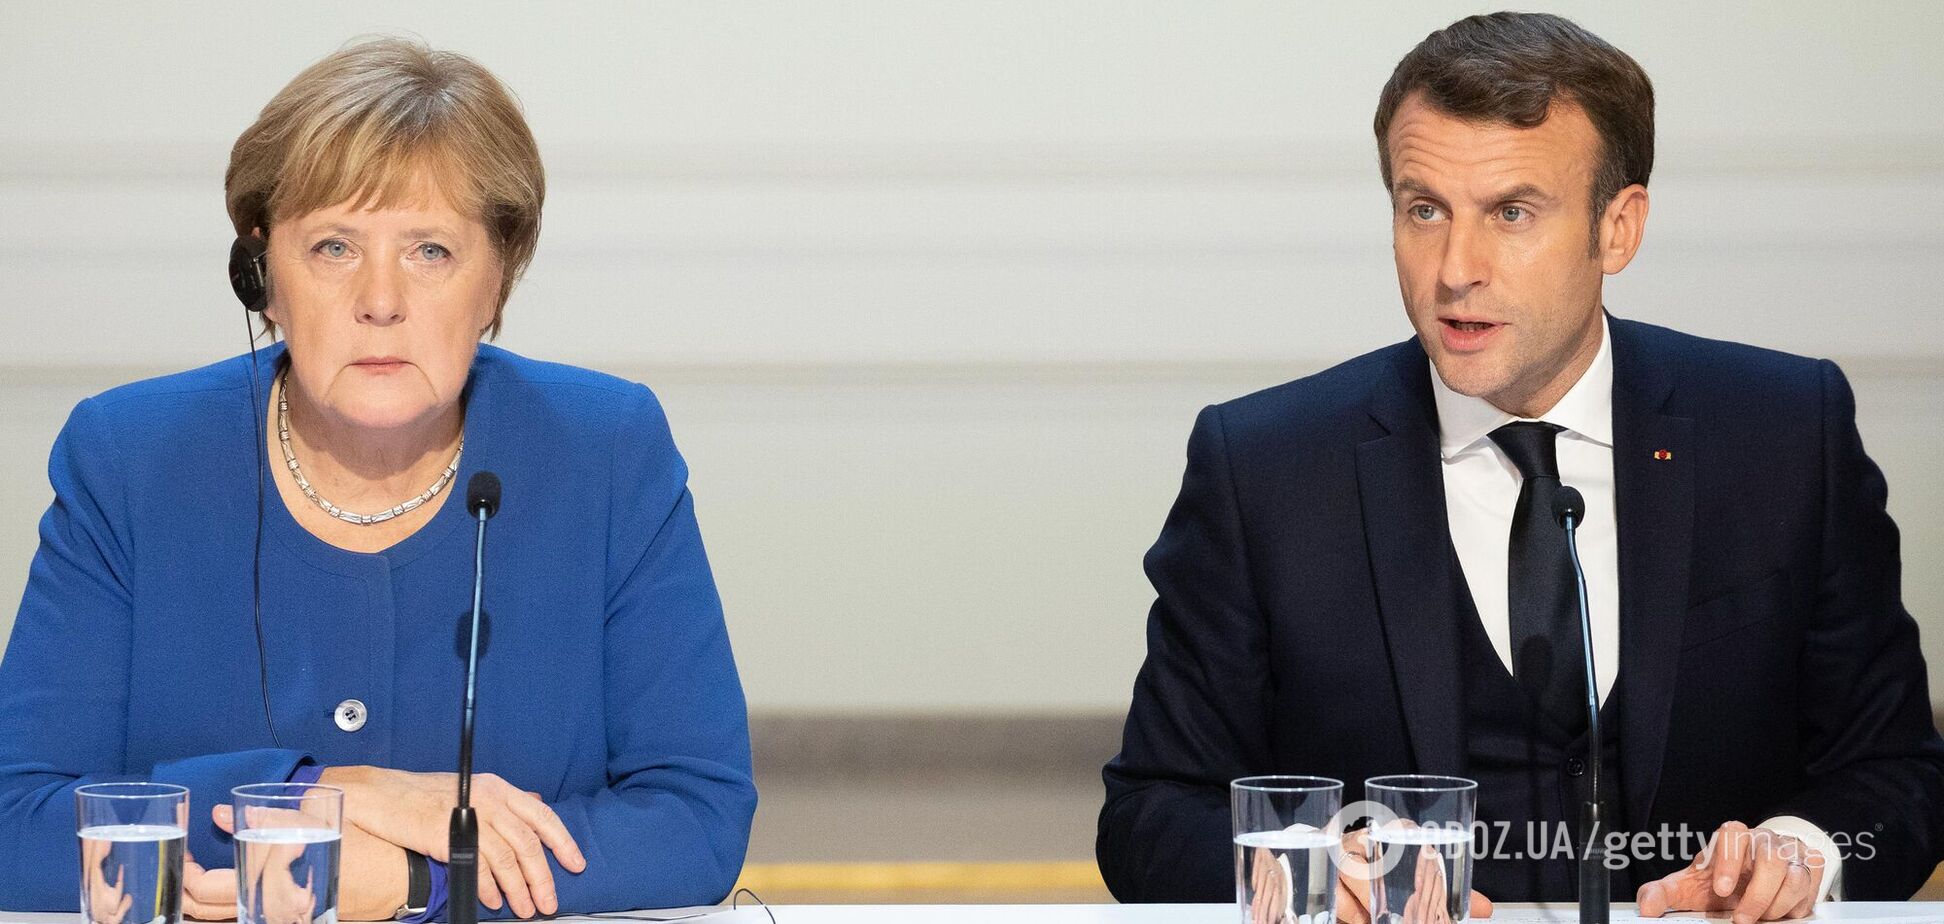 Німеччина готова надати Навальному лікування, а Франція – притулок